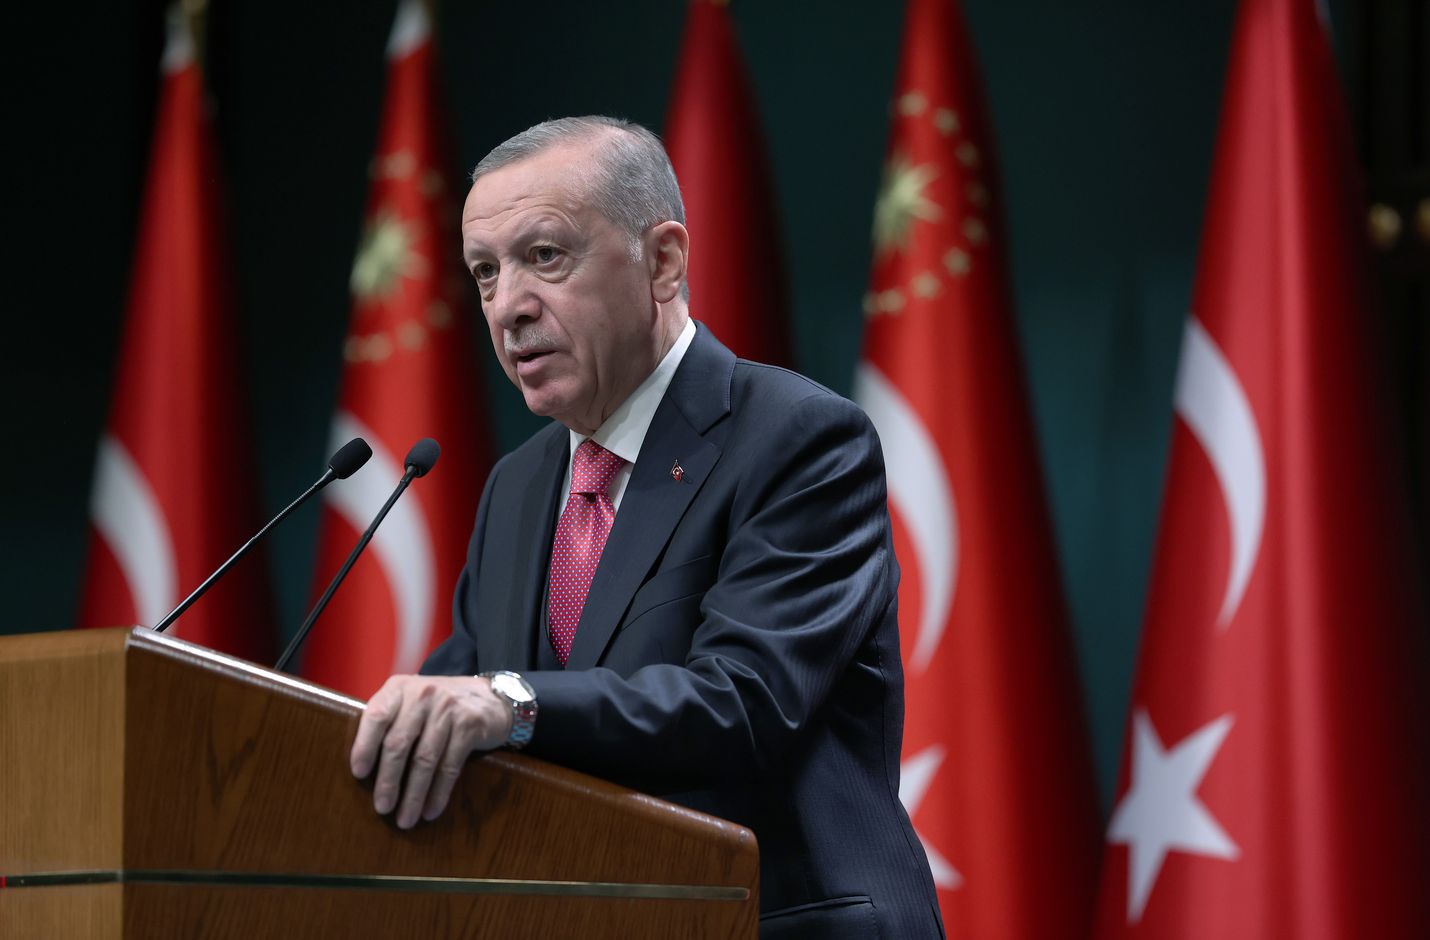 Turkin presidentti Recep Tayyip Erdoğan sanoi keskiviikkona, että haluaa kertoa suoraan presidentti Sauli Niinistölle lunastavansa lupauksensa Suomen Nato-jäsenyyden ratifioinnista.